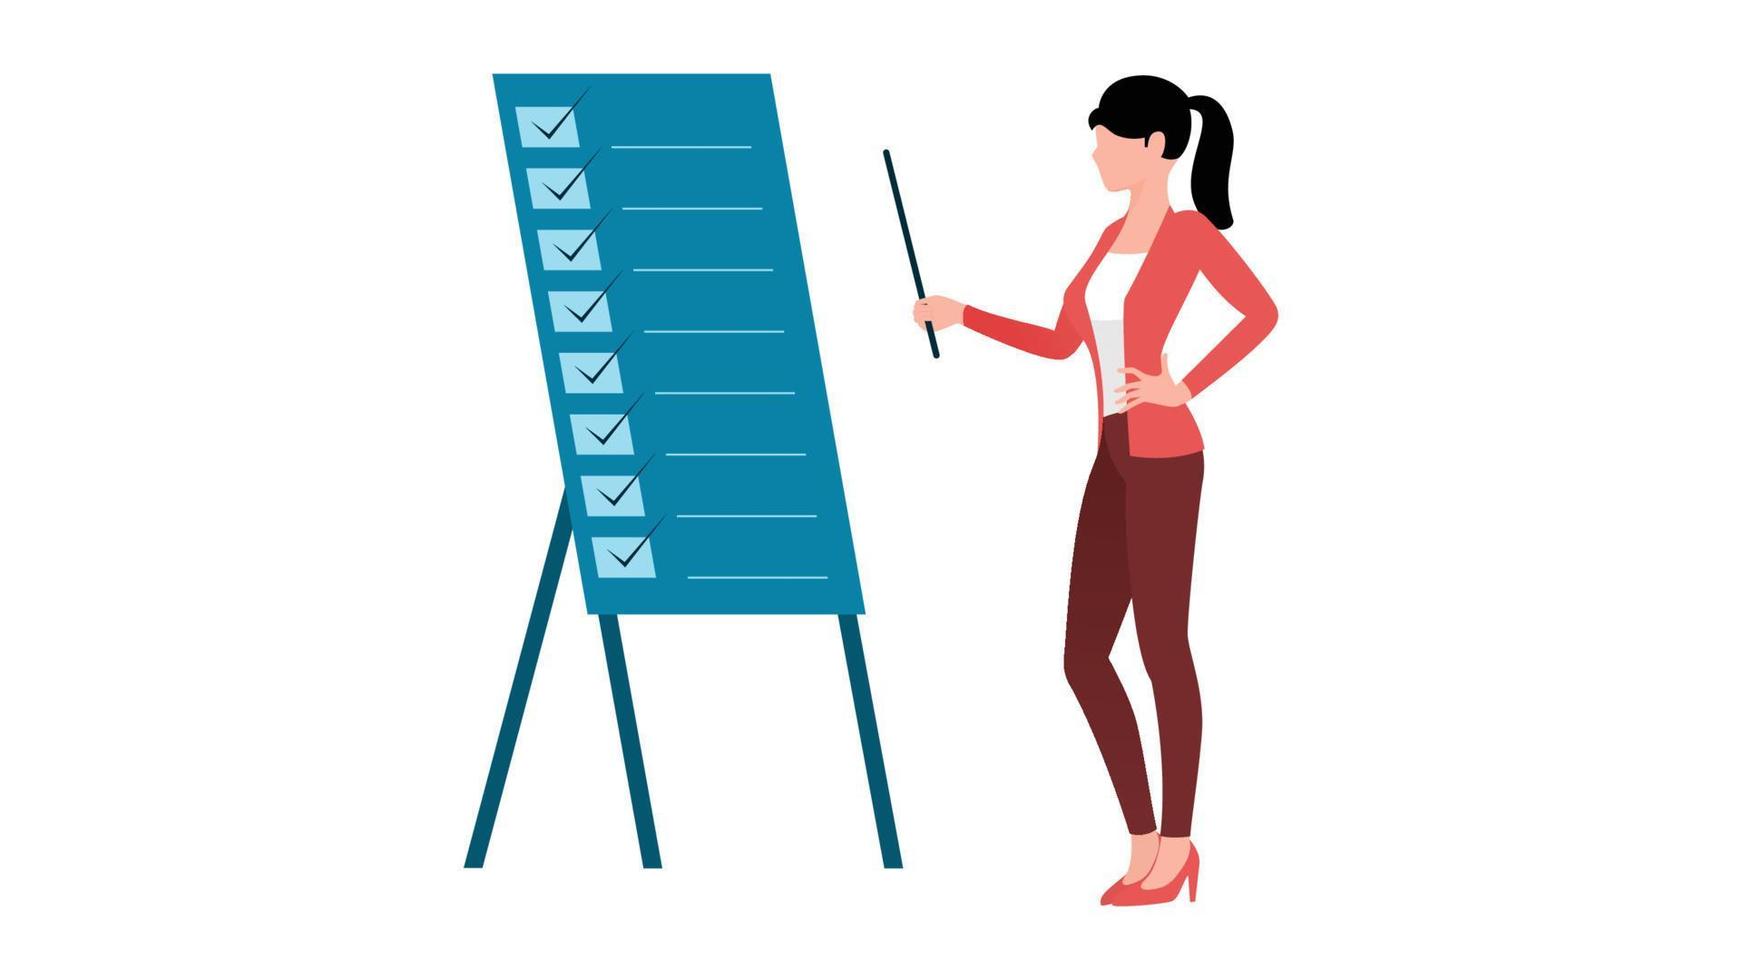 mujer apuntando al tablero de análisis o al tablero de lista de tareas, ilustración de vector de carácter de negocio plano sobre fondo blanco.